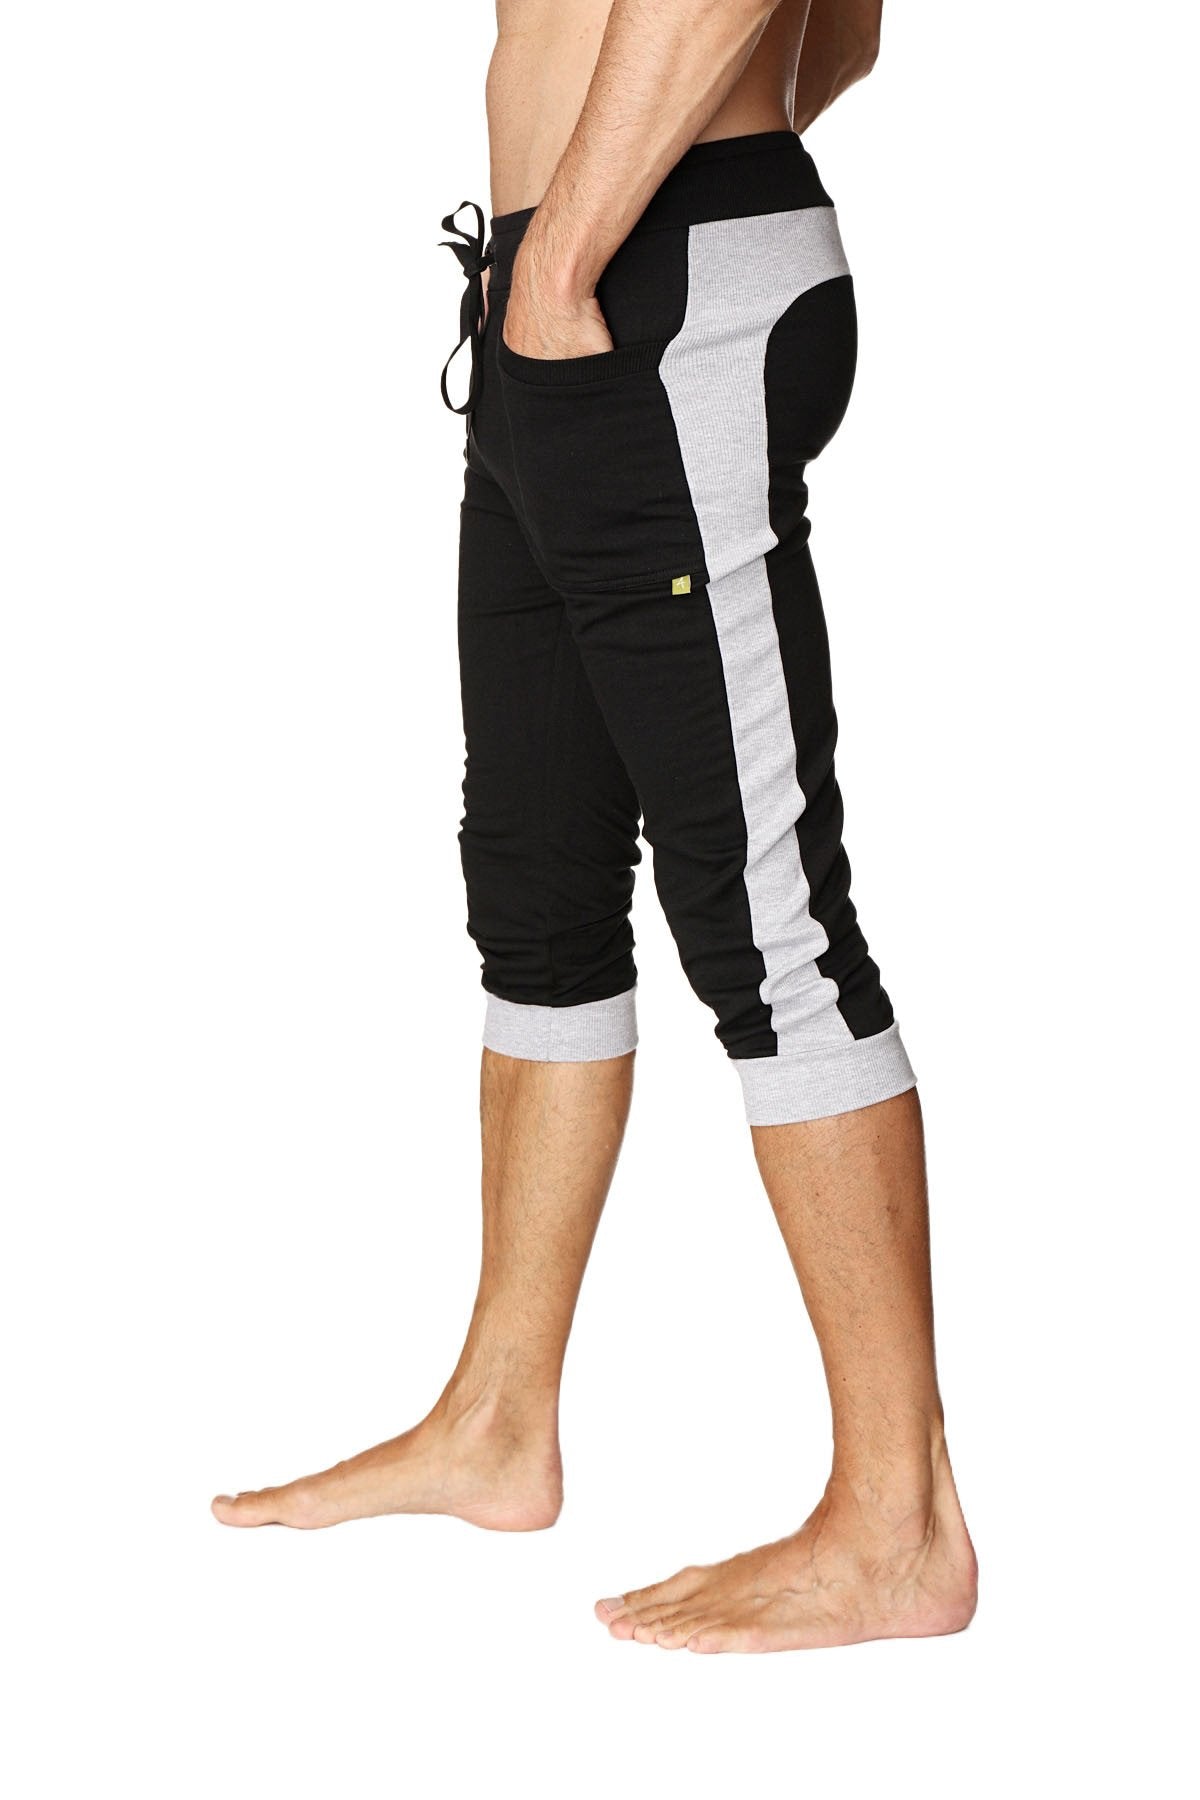 Cuffed Yoga Pants (Black w/Grey) by 4-rth